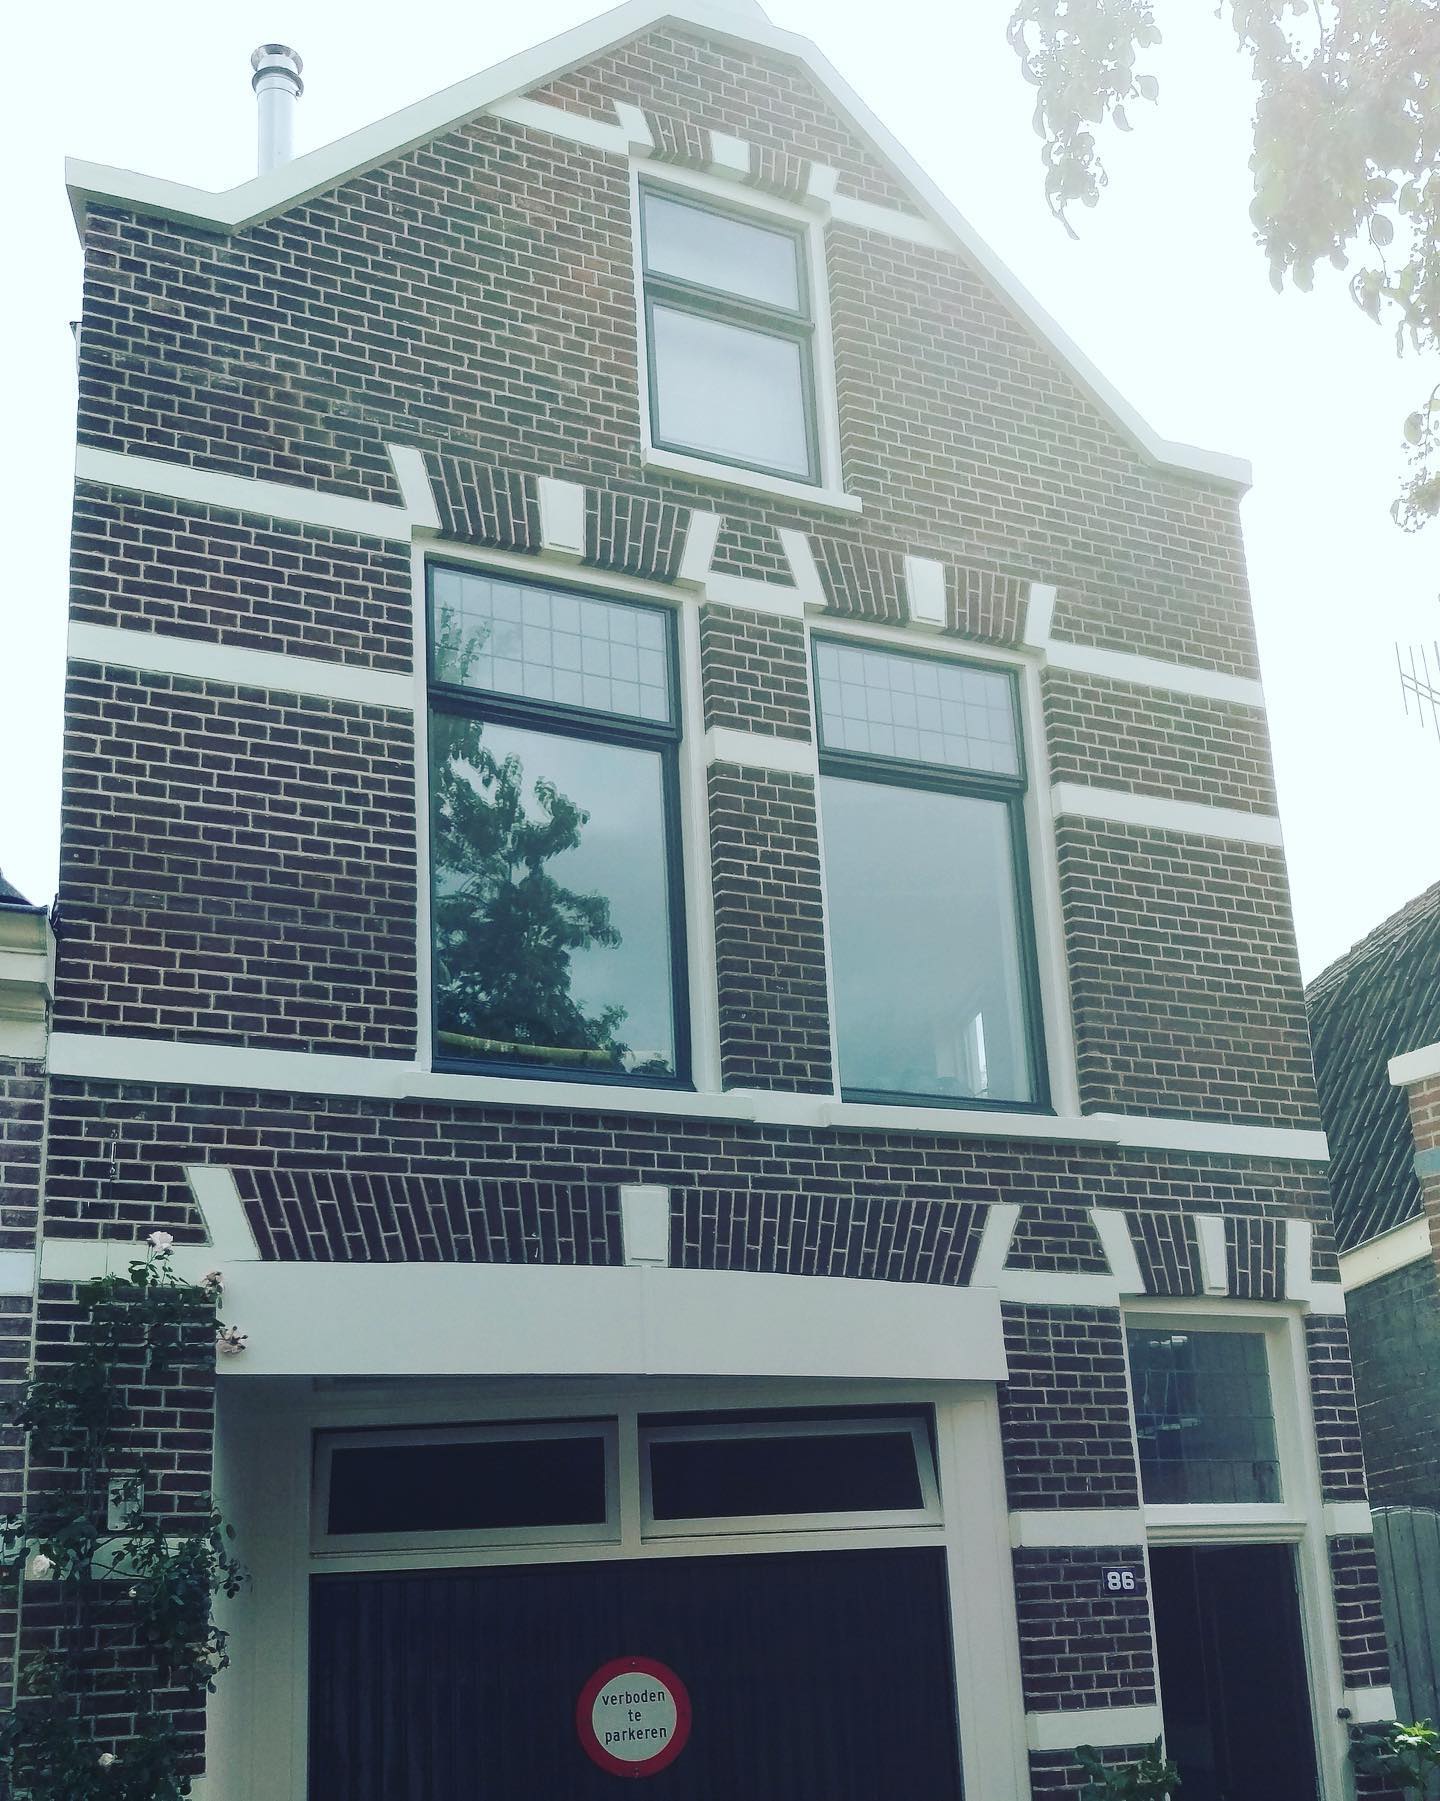 Gevel van tussenwoning in Zwolle gerestaureerd door Voegbedrijf Heldoorn